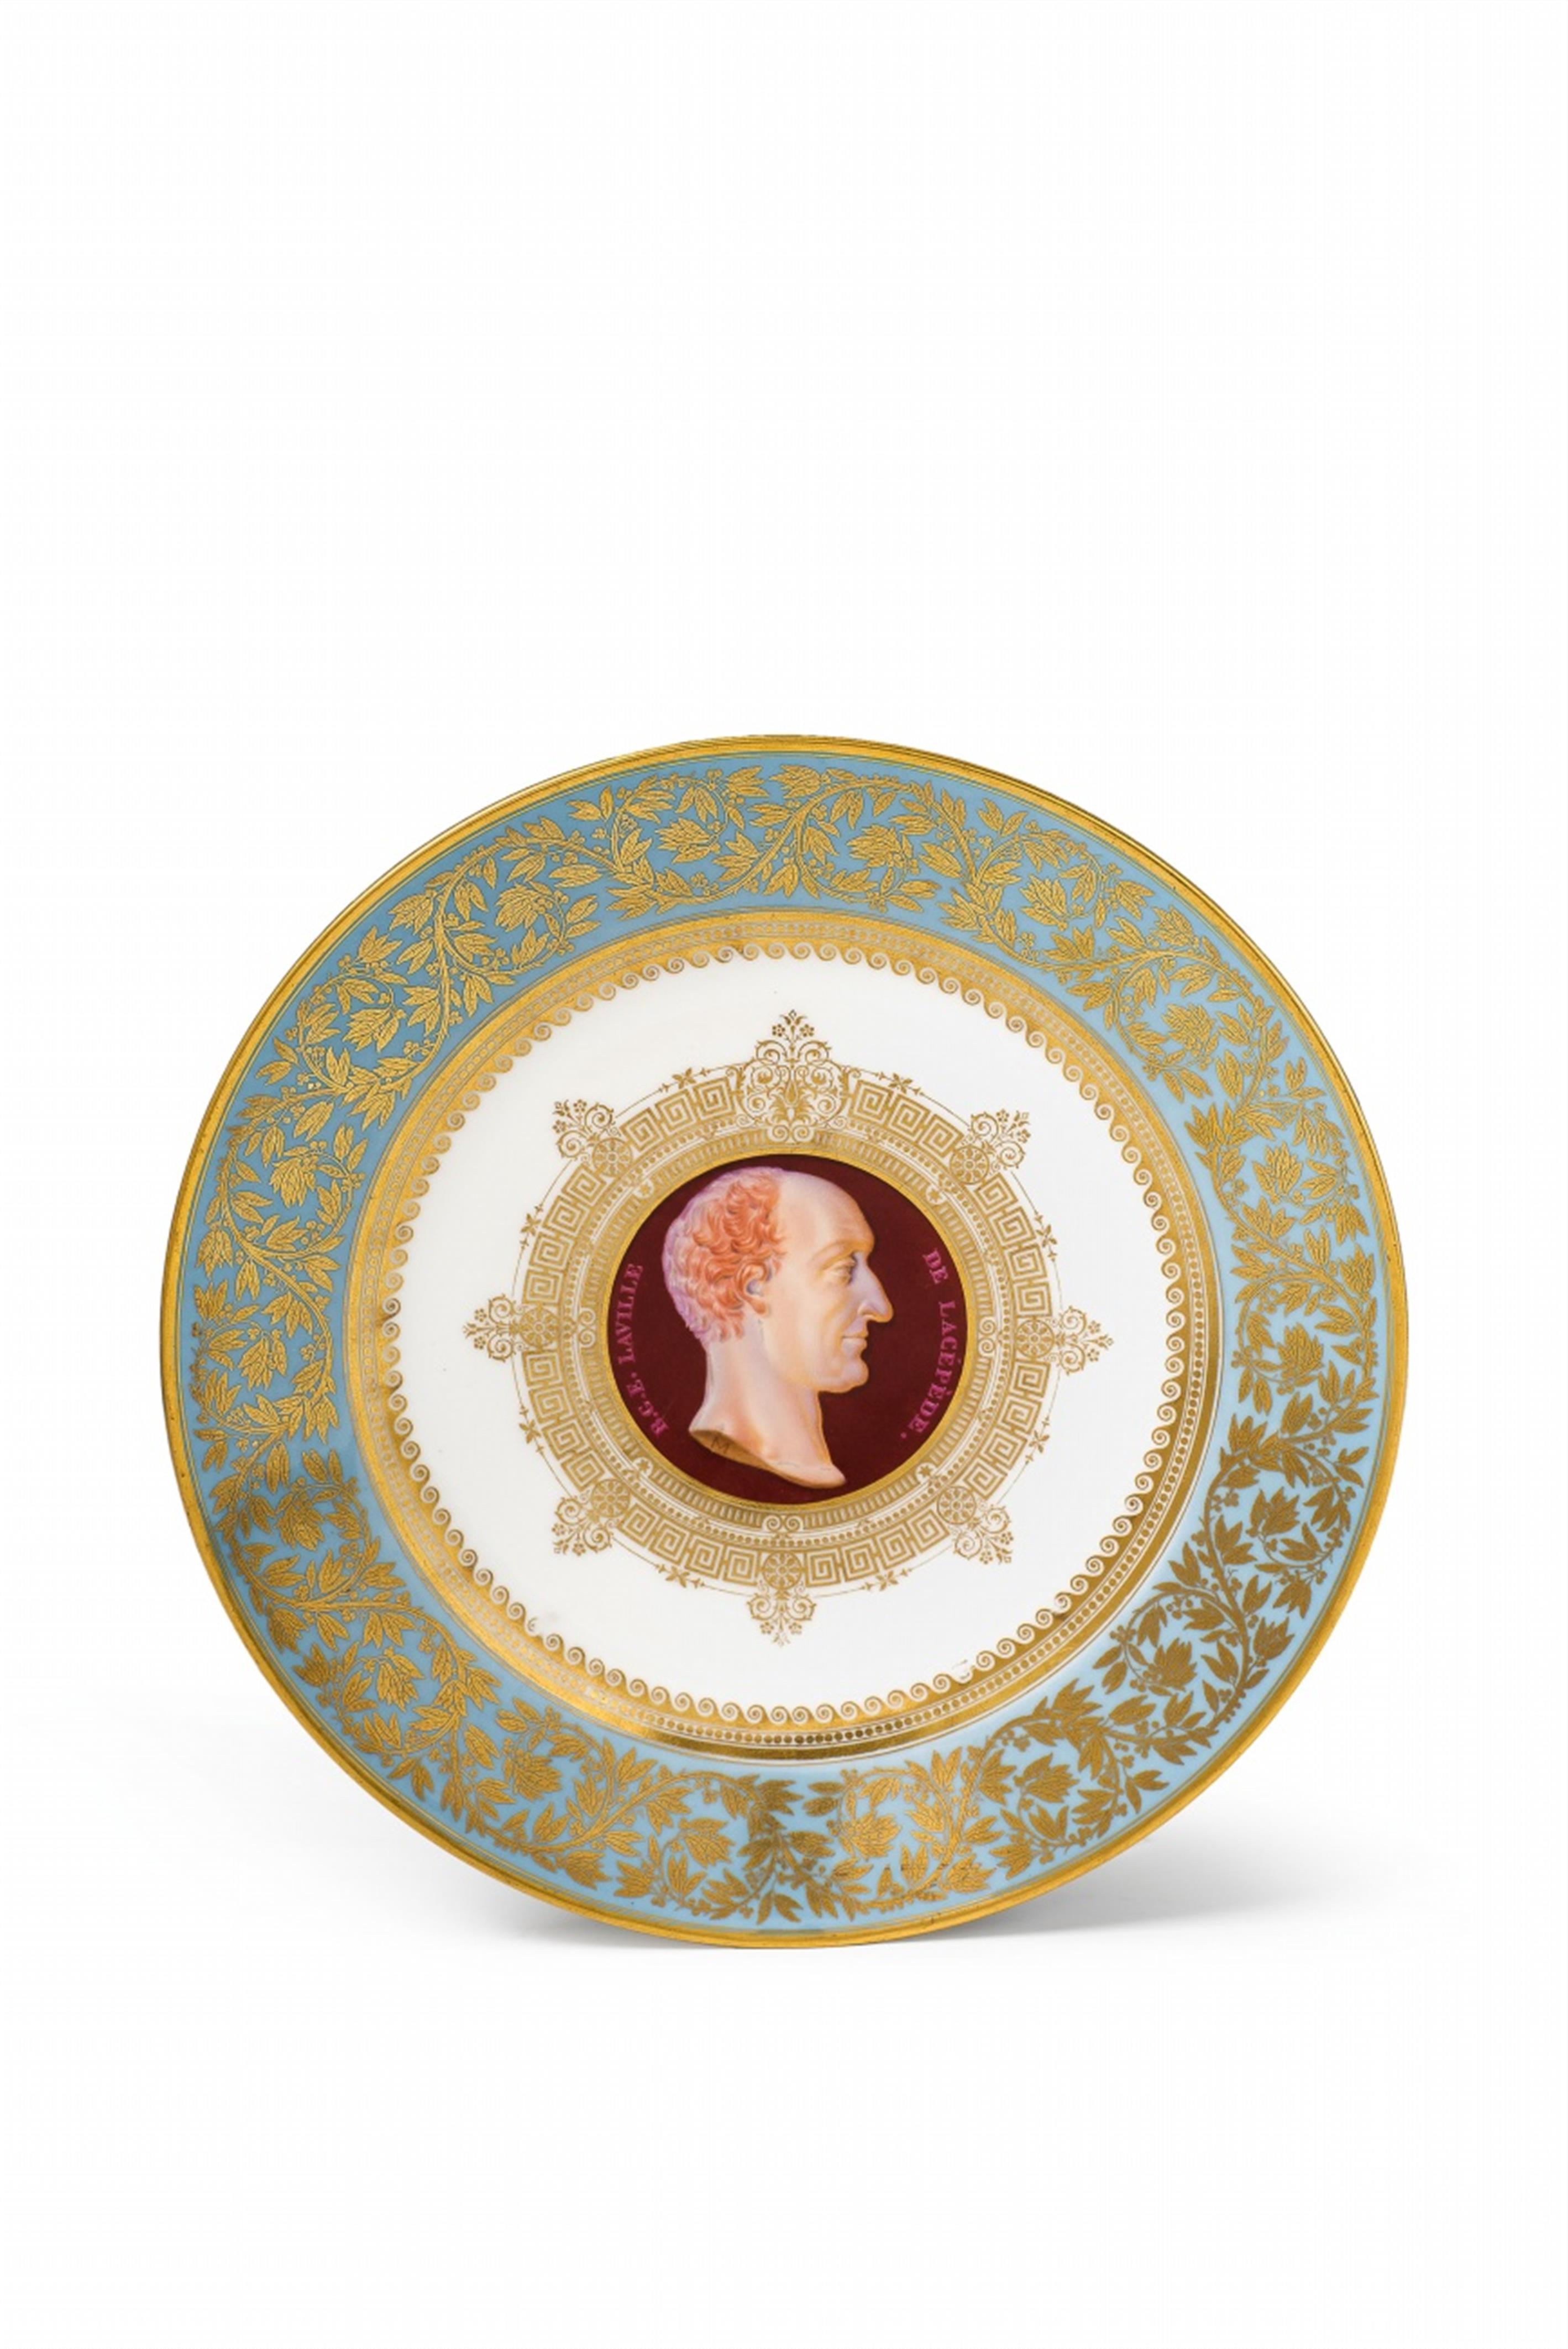 Two Sèvres porcelain plates the "Illustres françaises" service - image-1